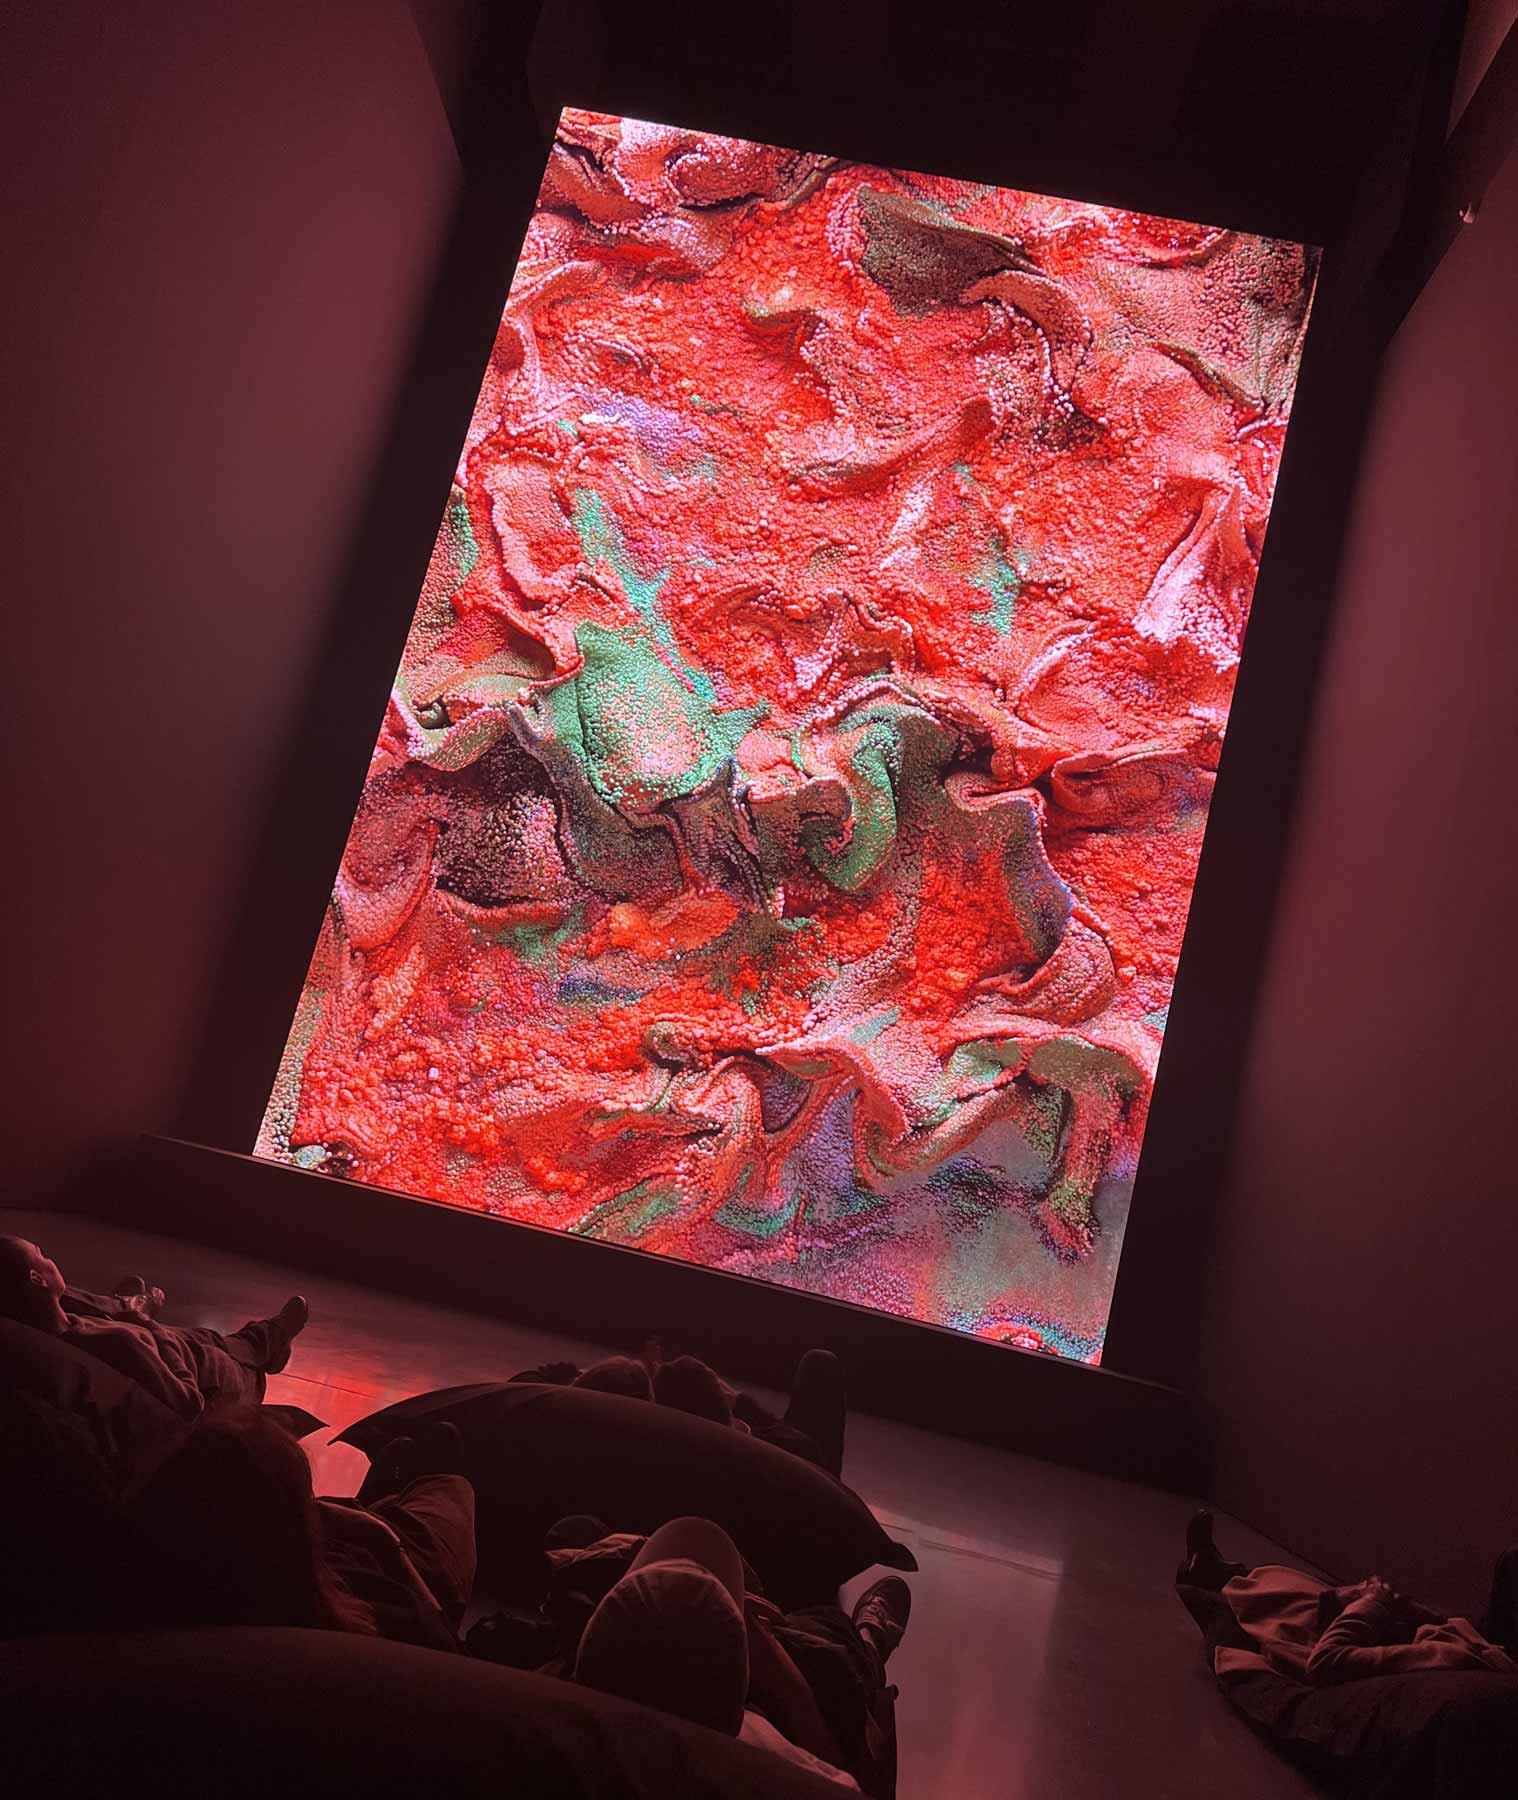 Museumsbesucher liegen vor einer riesigen LED-Wand mit abstrakten Pixelwelten